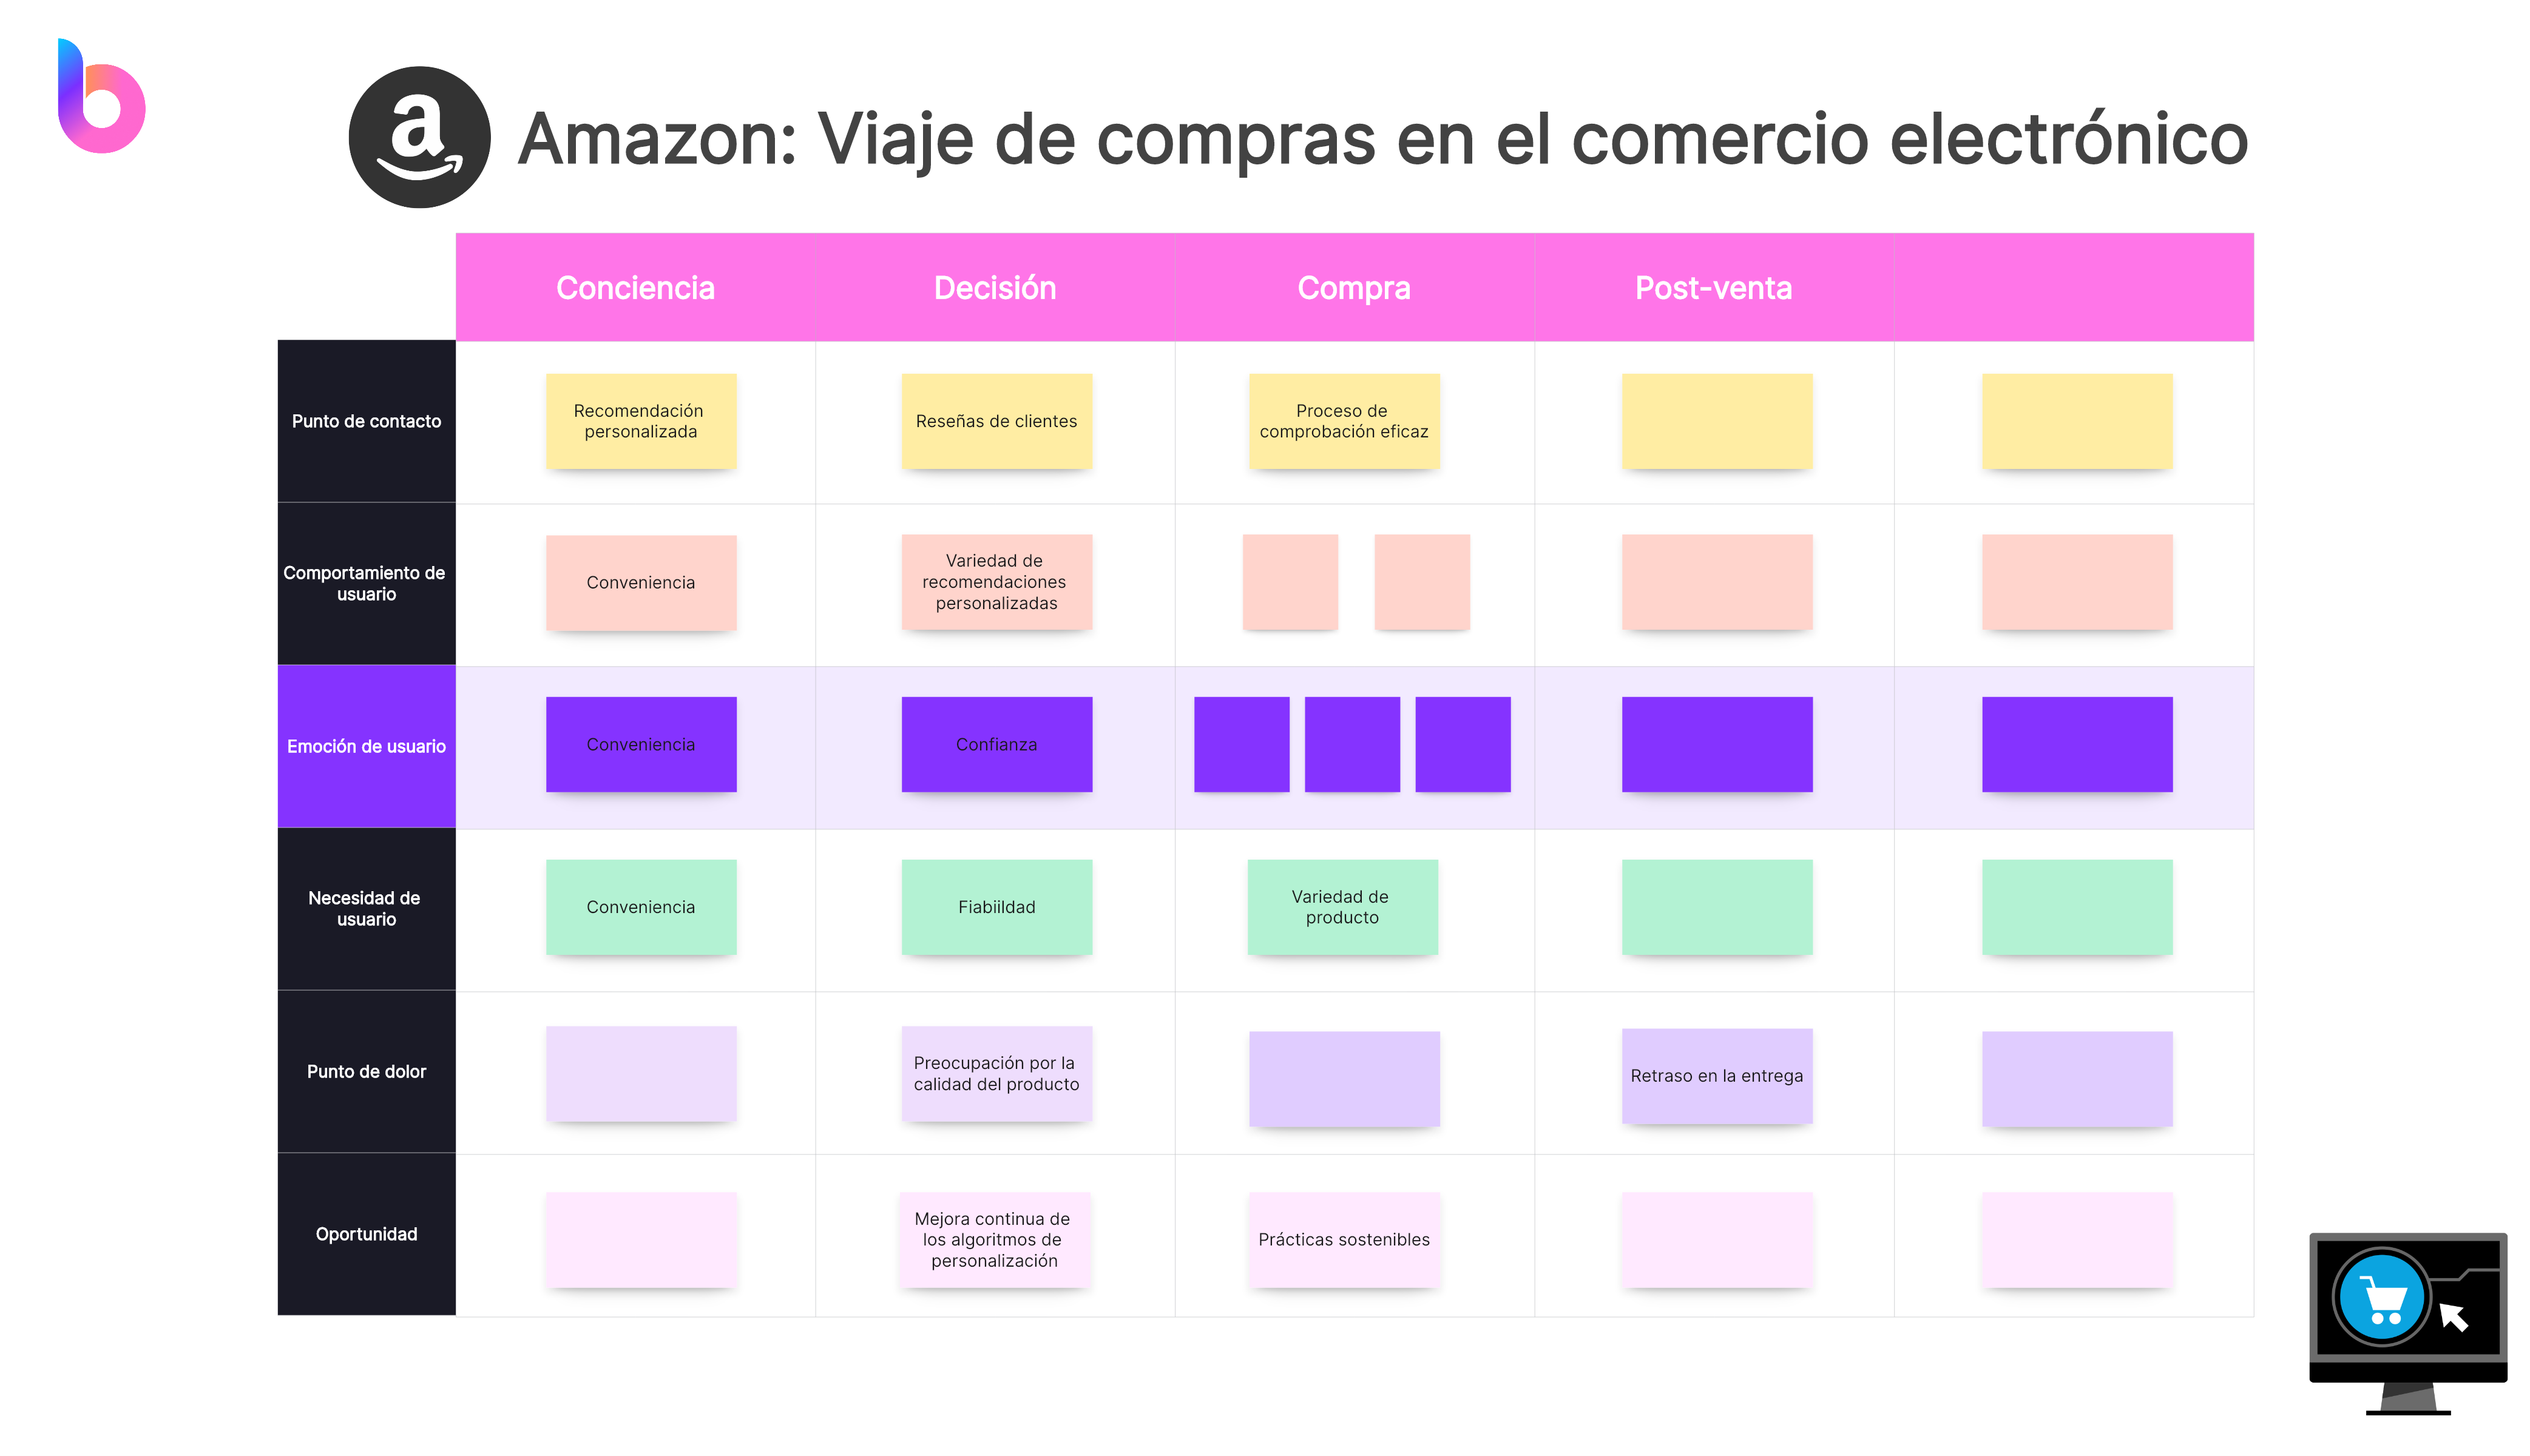 Amazon: Viaje de compras en el comercio electrónico